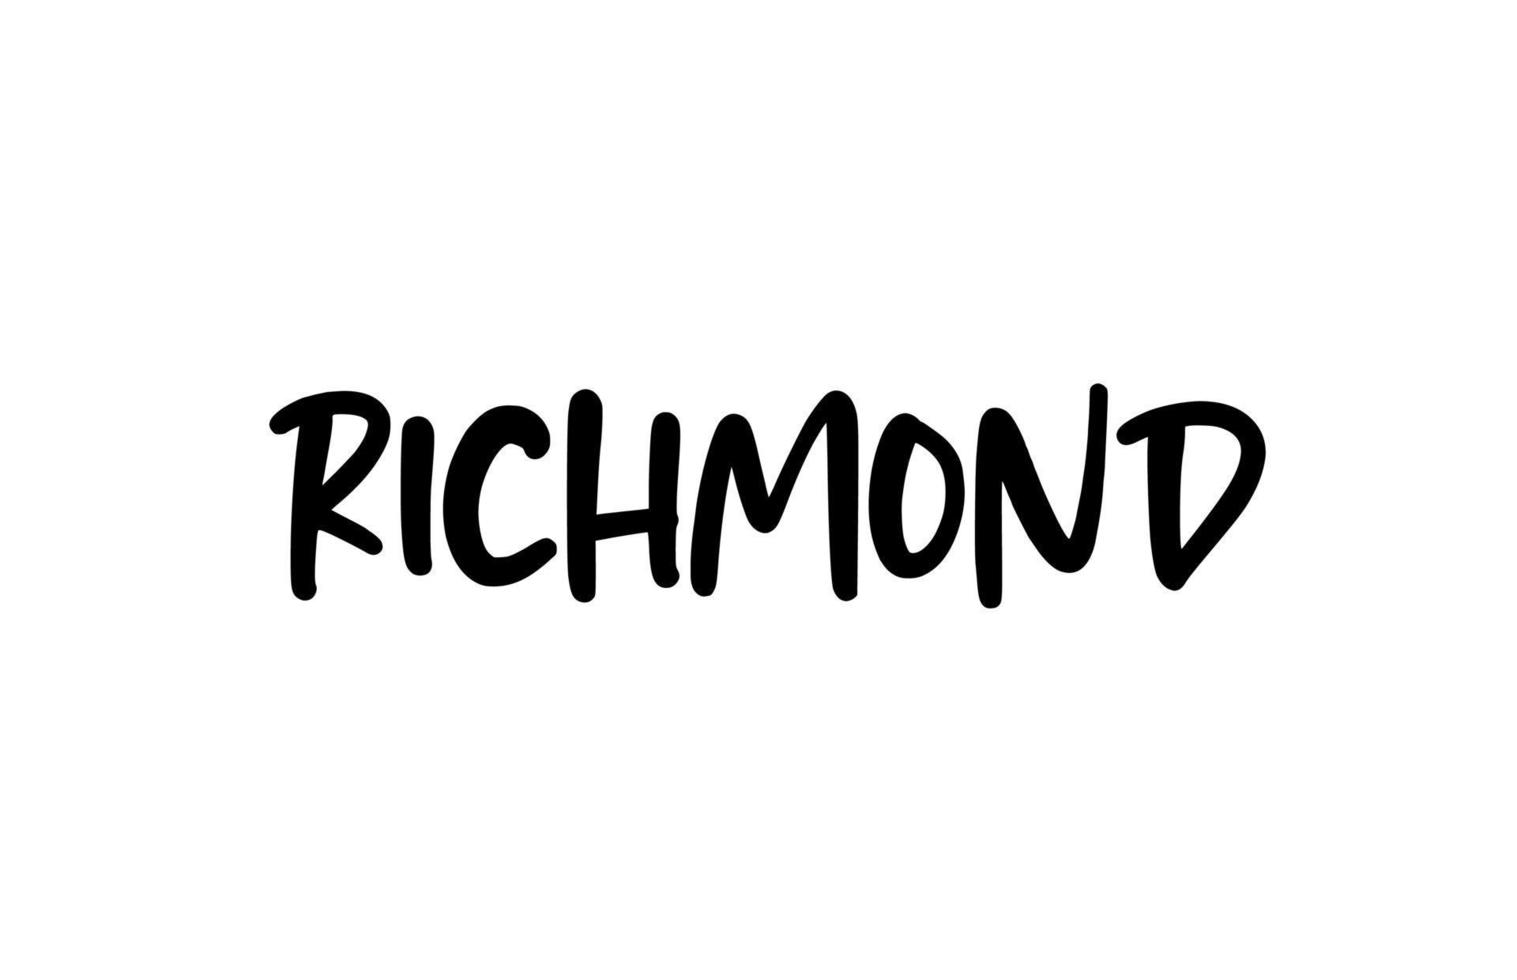 mot de typographie manuscrite de la ville de richmond lettrage à la main. texte de calligraphie moderne. couleur noire vecteur